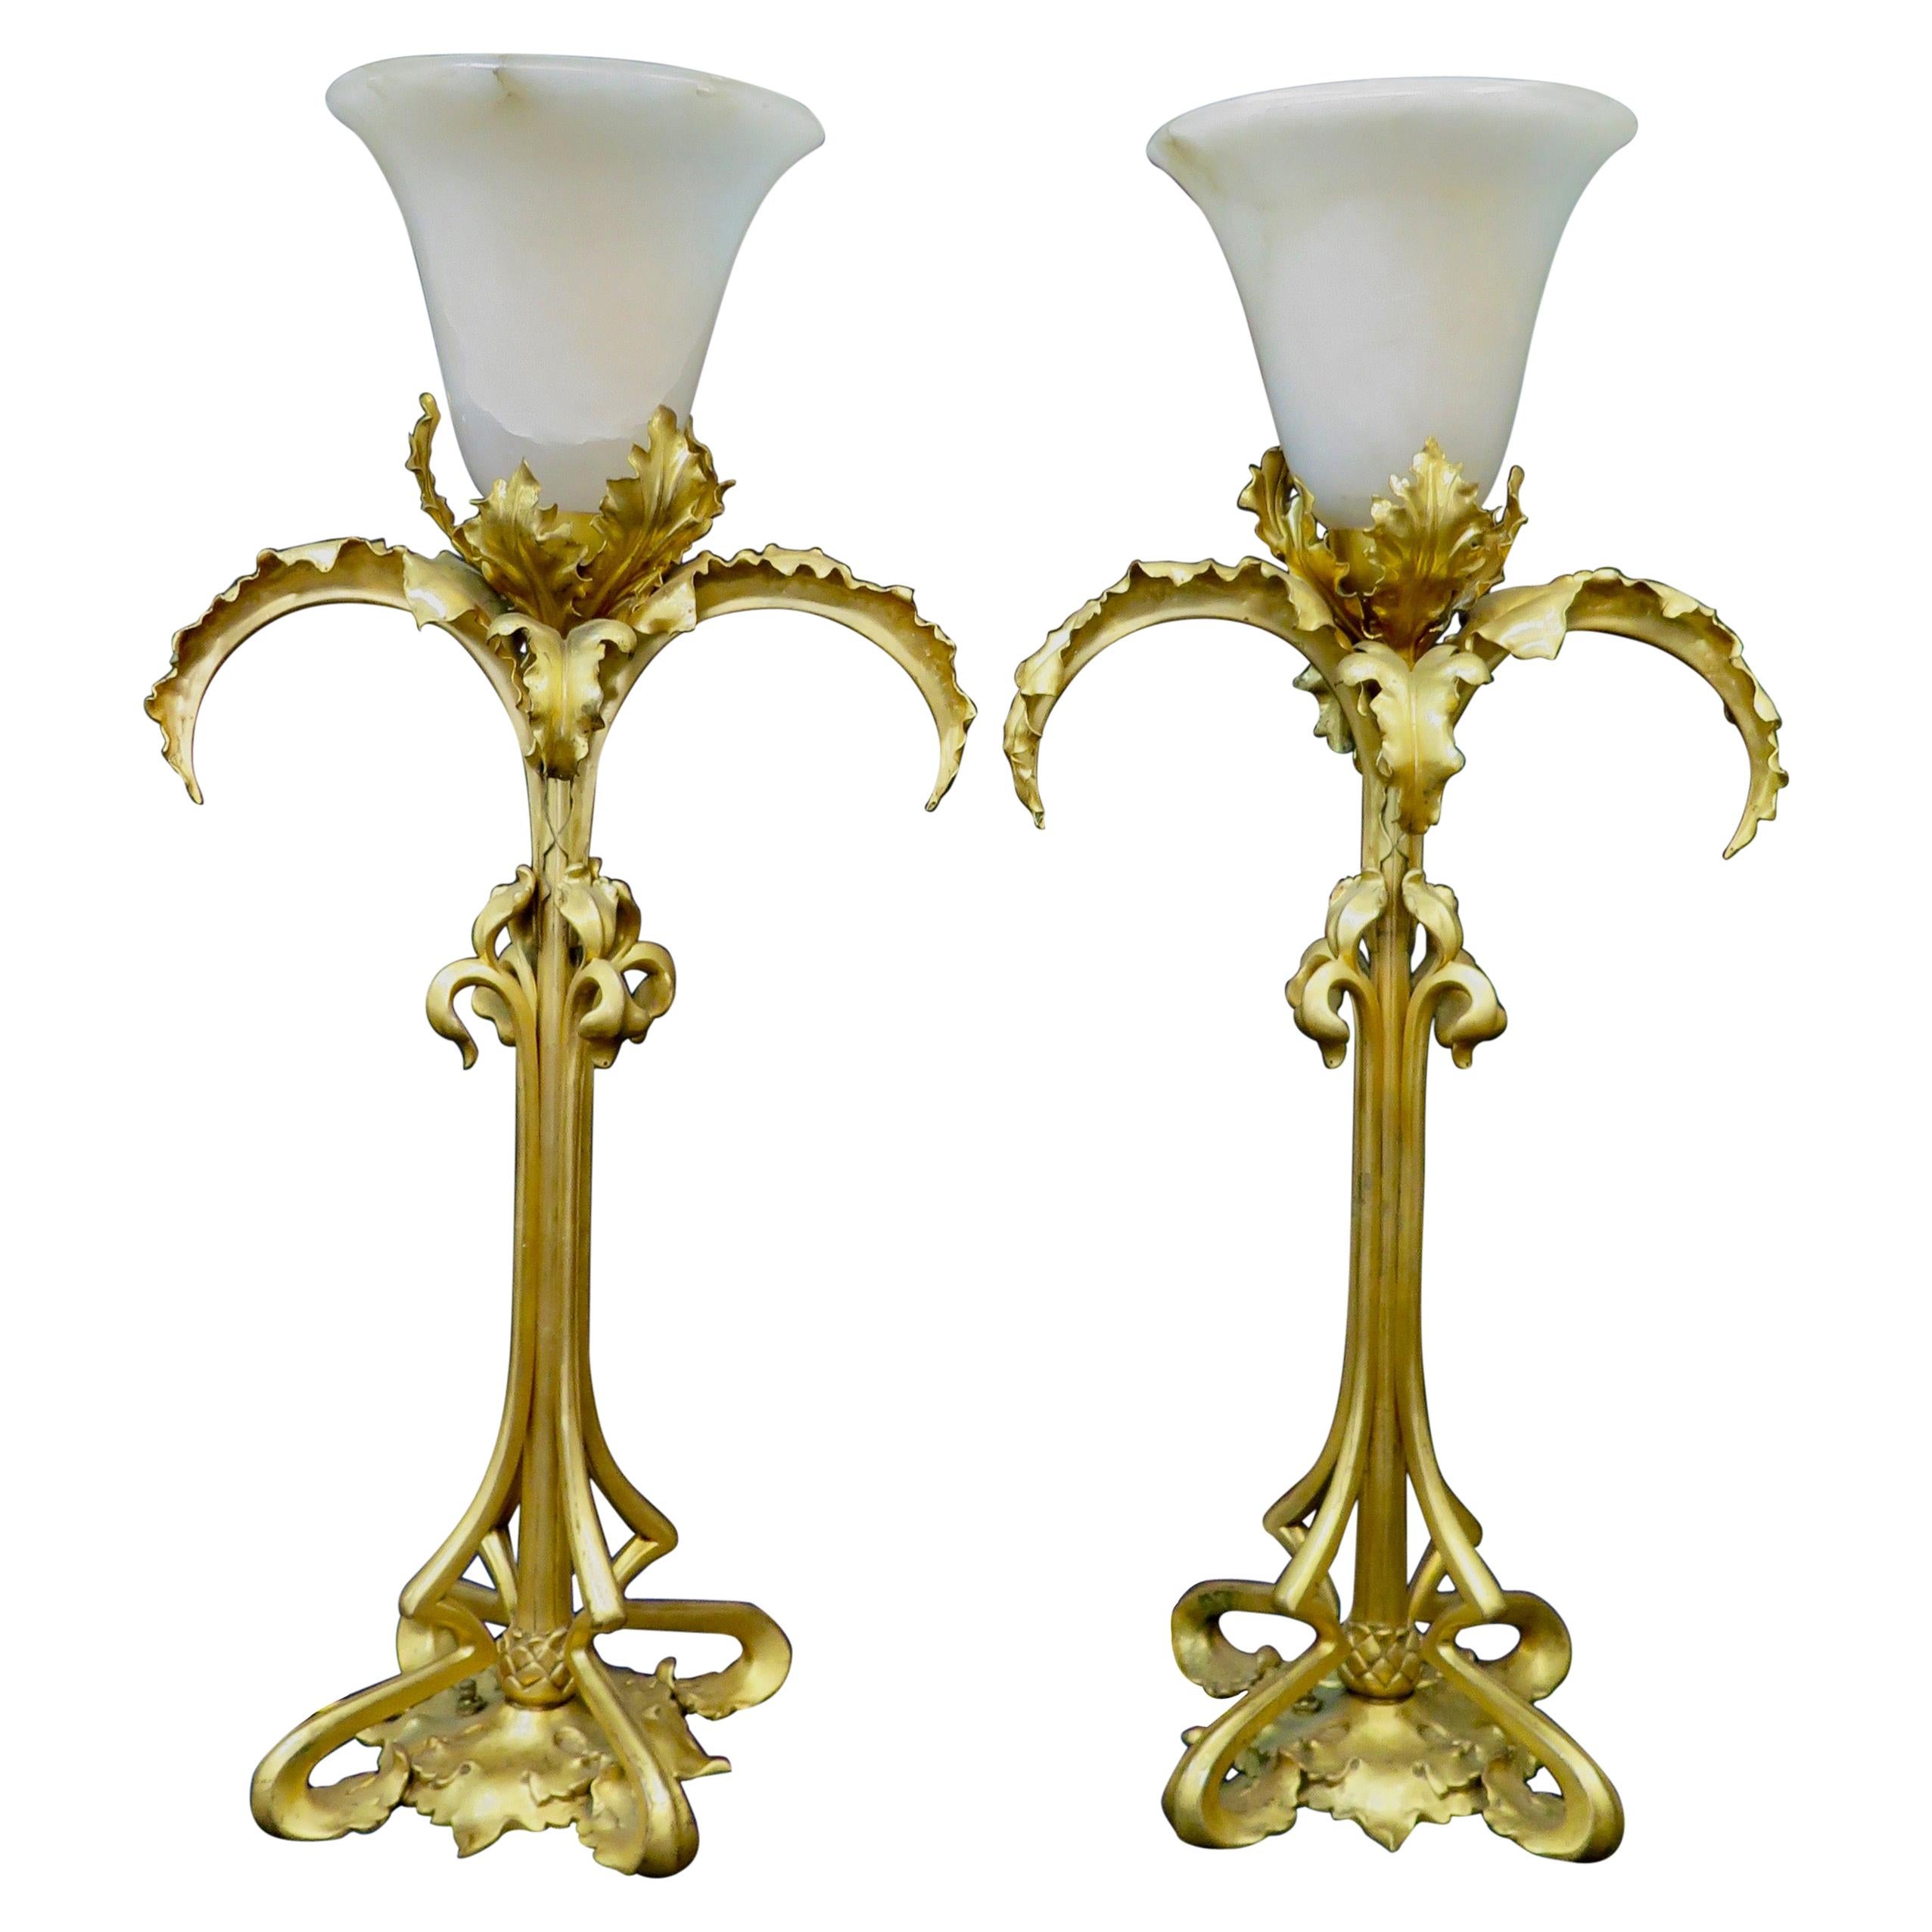 Vintage Doré Bronze and Alabaster Art Nouveau Period Lamps Pair